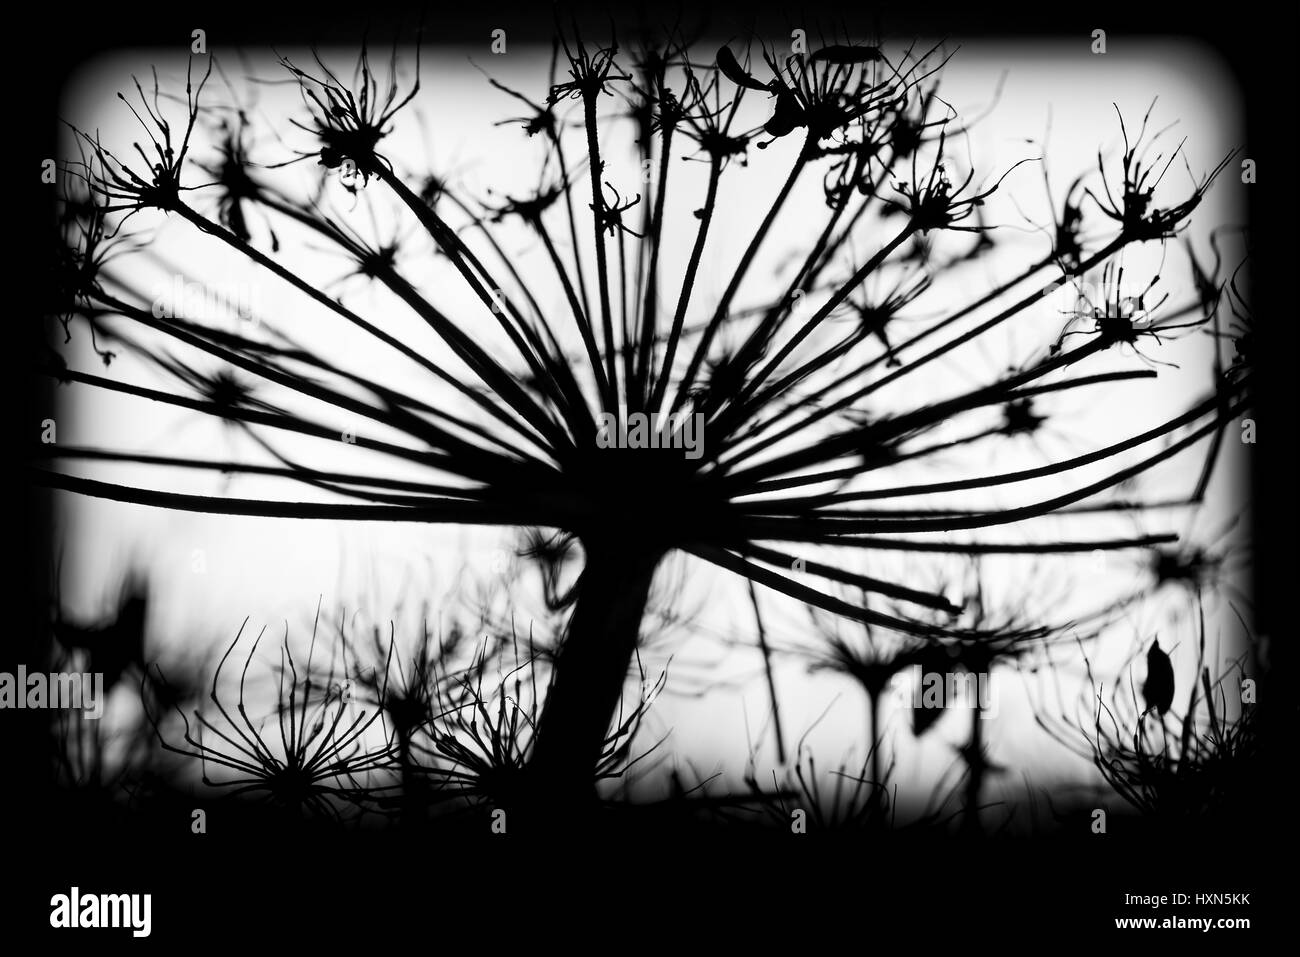 Heracleum sosnowskyi sec foncé fleurs, noir et blanc macro photo silhouette avec selective focus Banque D'Images